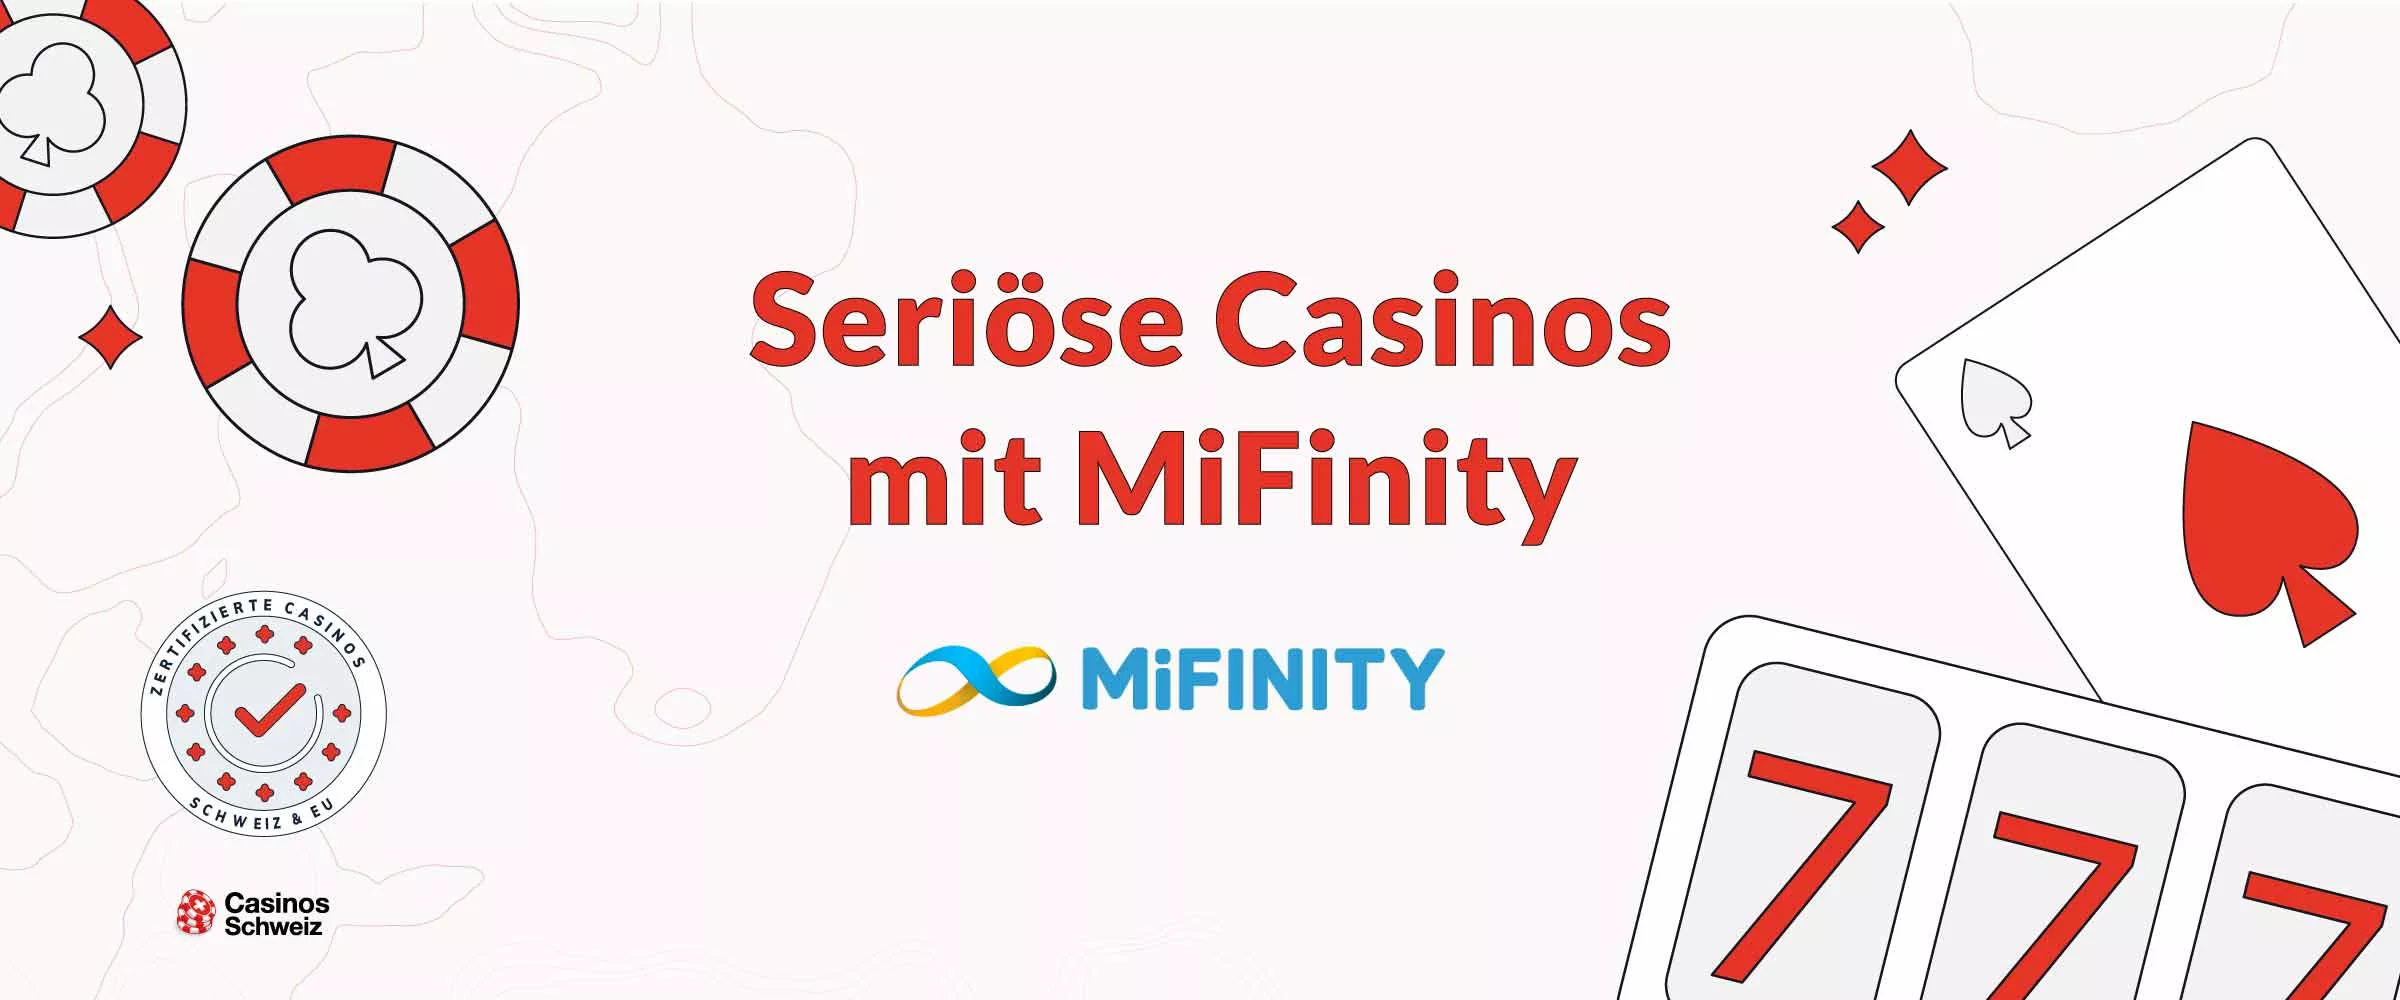 seriöse Casinos mit MiFinity